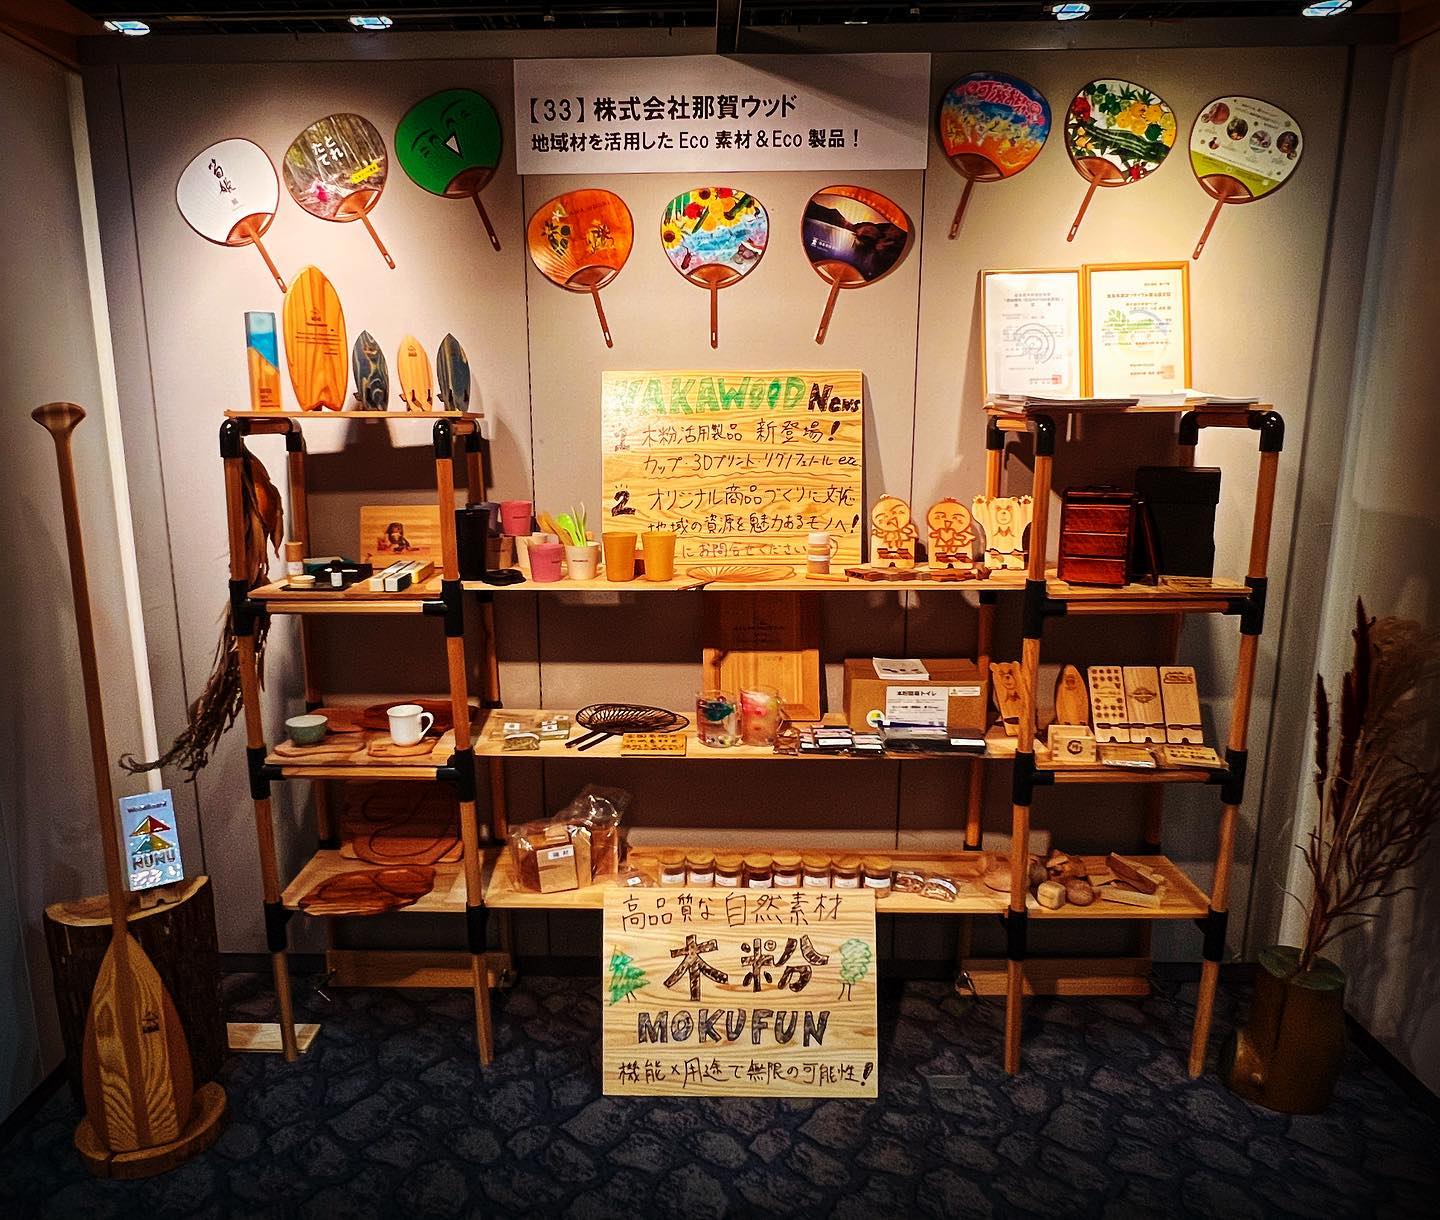 SDGs対応技術展木粉、木粉活用製品、無垢木工製品たちを引き連れて大阪に行っていました！関西広域連合の主催で、管内の事業者が参加できるやつでした徳島から唯一の参加、もちろん四国からも唯一でした〜久しぶりの展示会、スペースをフルに使っていい感じにできたかな！？と思っていますご協力頂いたみなさま、誠にありがとうございました！そのかいあってか、テレビ大阪にさんのニュースに取り上げていただくなど、びっくり嬉しいこともありました！会社パンフが足りなくなってしまいビビりました🥹会社情報に楽にアクセスできるように、DX的なことも整備していきたいと思います🫡木っていろいろできるんやな、と思ってもらえるように引き続きアピール頑張ります🌲🌲🌲パートナーのみなさま、引き続きよろしくお願い致します#sdgs #木粉 #木 #杉 #桧 #竹 #木育 #nakawood #woodboardkuku #連携